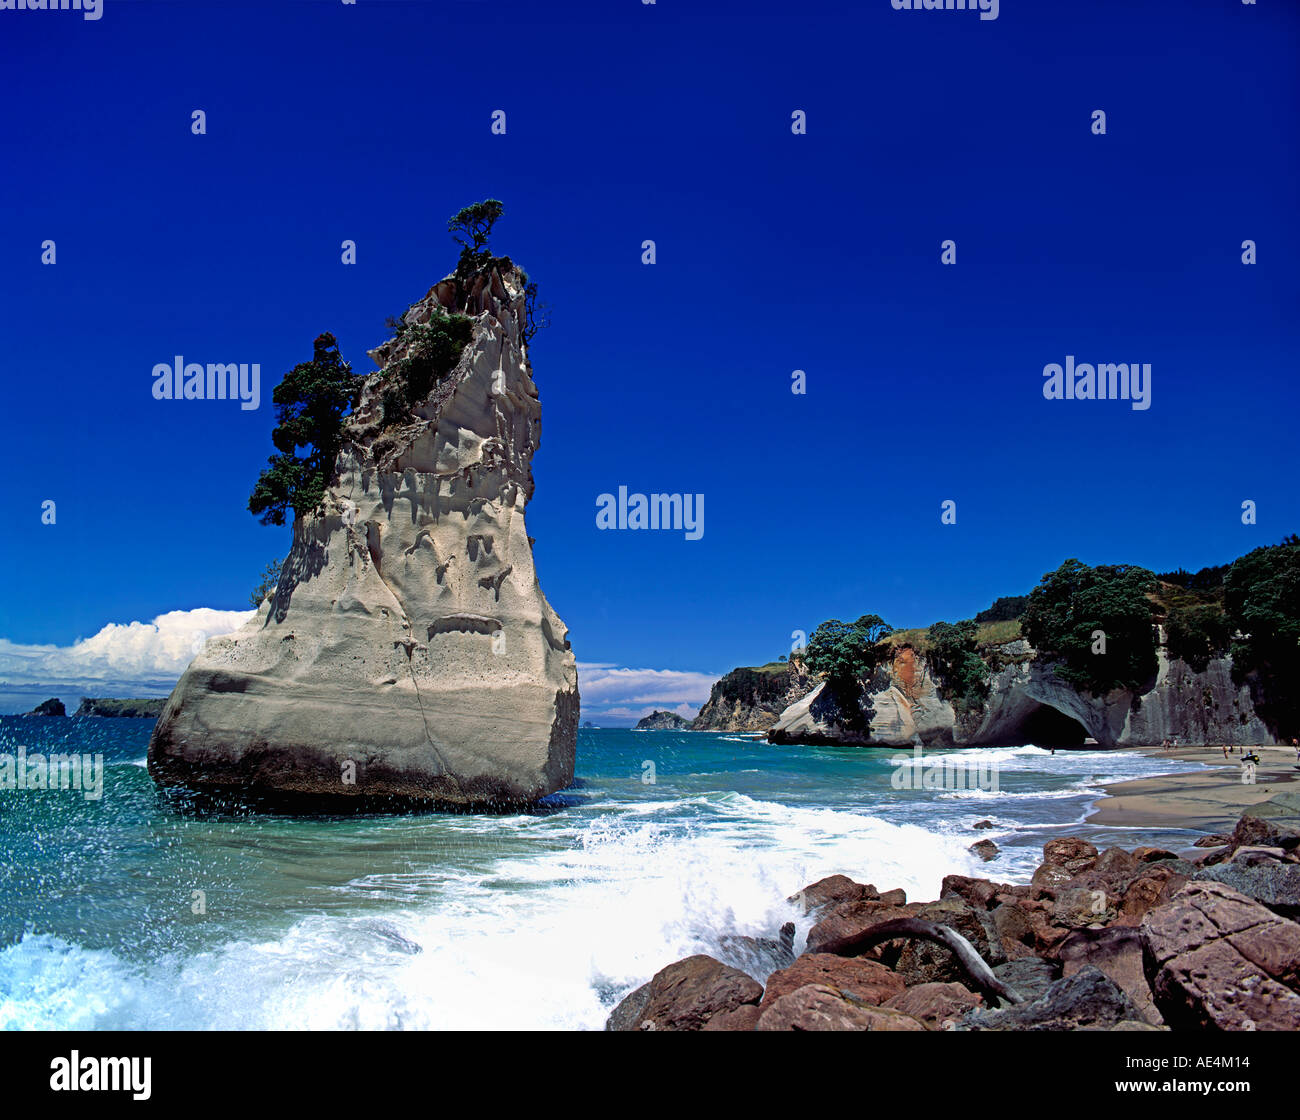 Nuova Zelanda Coromandel grotta cattedrale rock Foto Stock